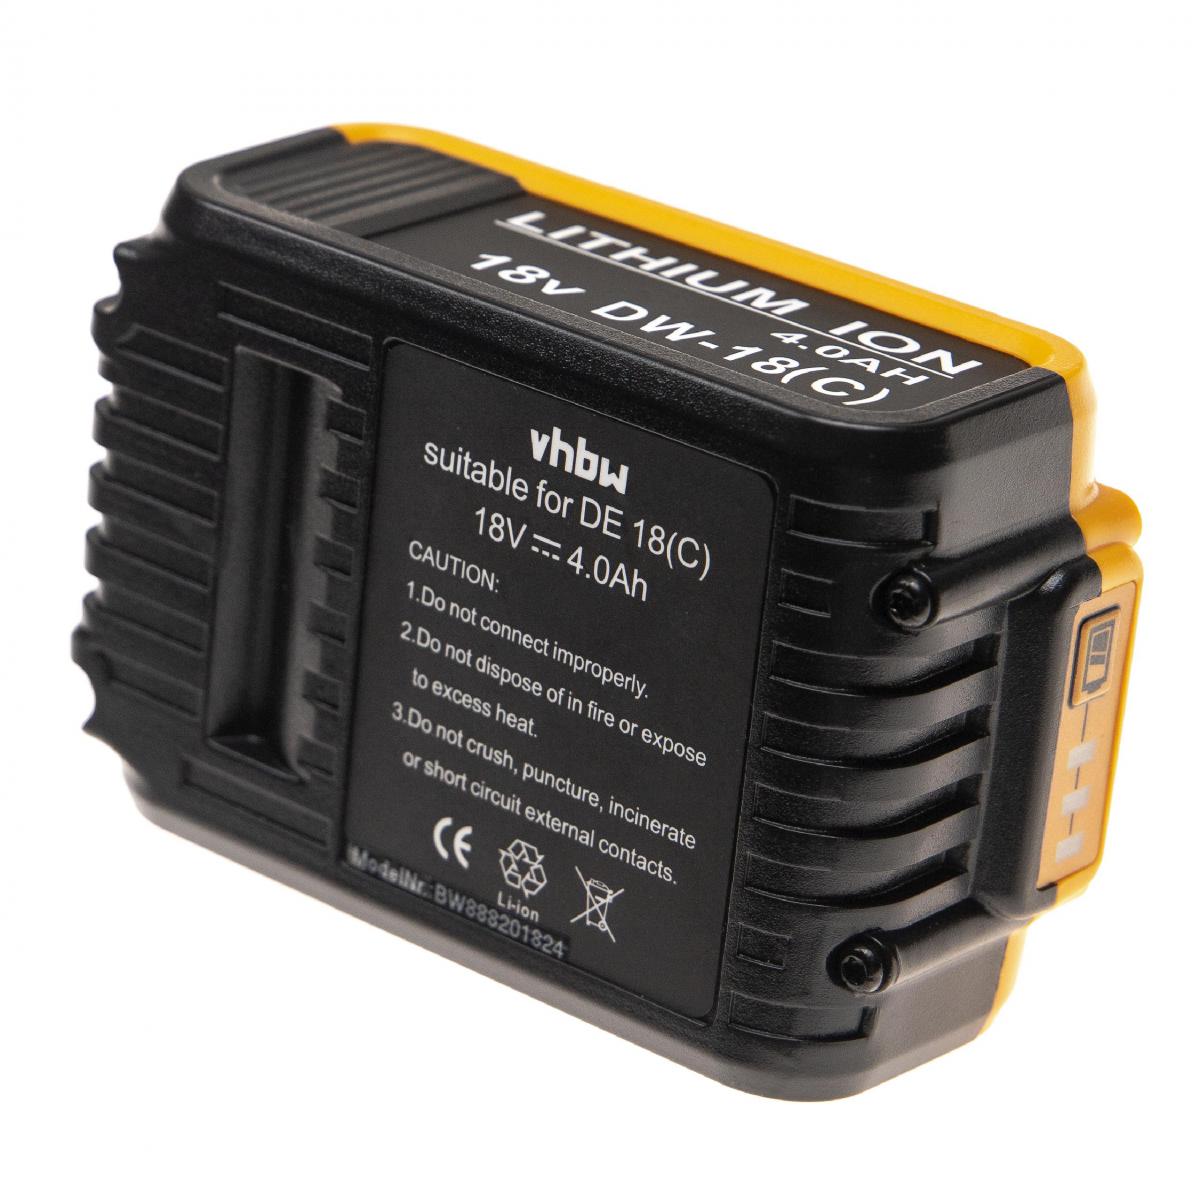 Vhbw - vhbw Batterie compatible avec Dewalt DCH213, DCH253, DCH273, DCL040, DCN690, DCR006, DCS331, DCS331B outil électrique (4000mAh Li-Ion 18V) - Clouterie